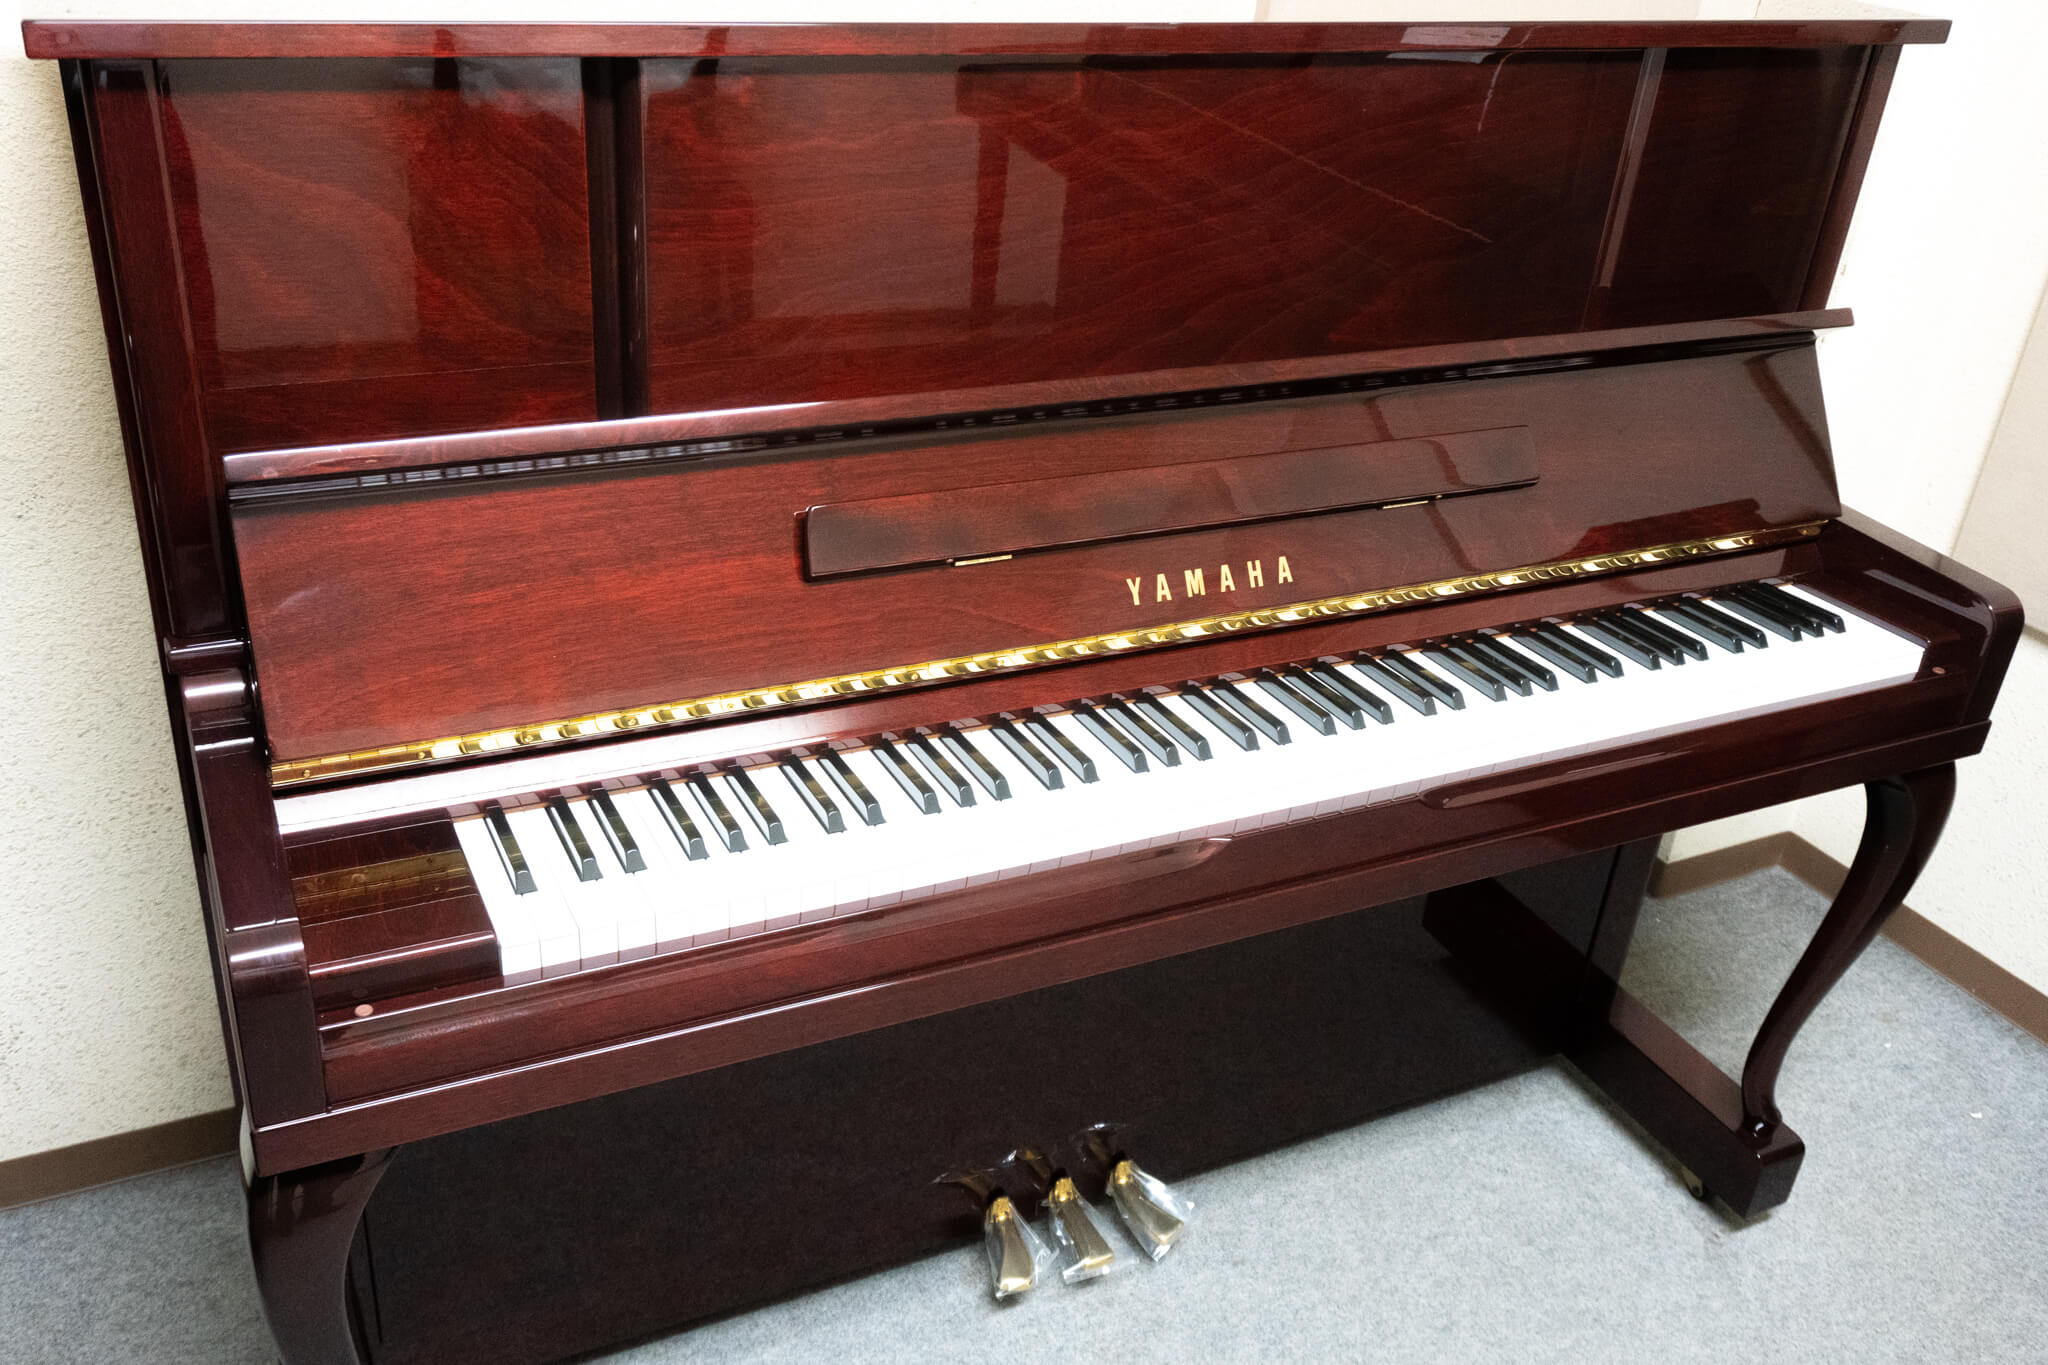 ヤマハ UX10BiC| 中古ピアノ 自社工房リフレッシュ済3年保証付 | 新響 